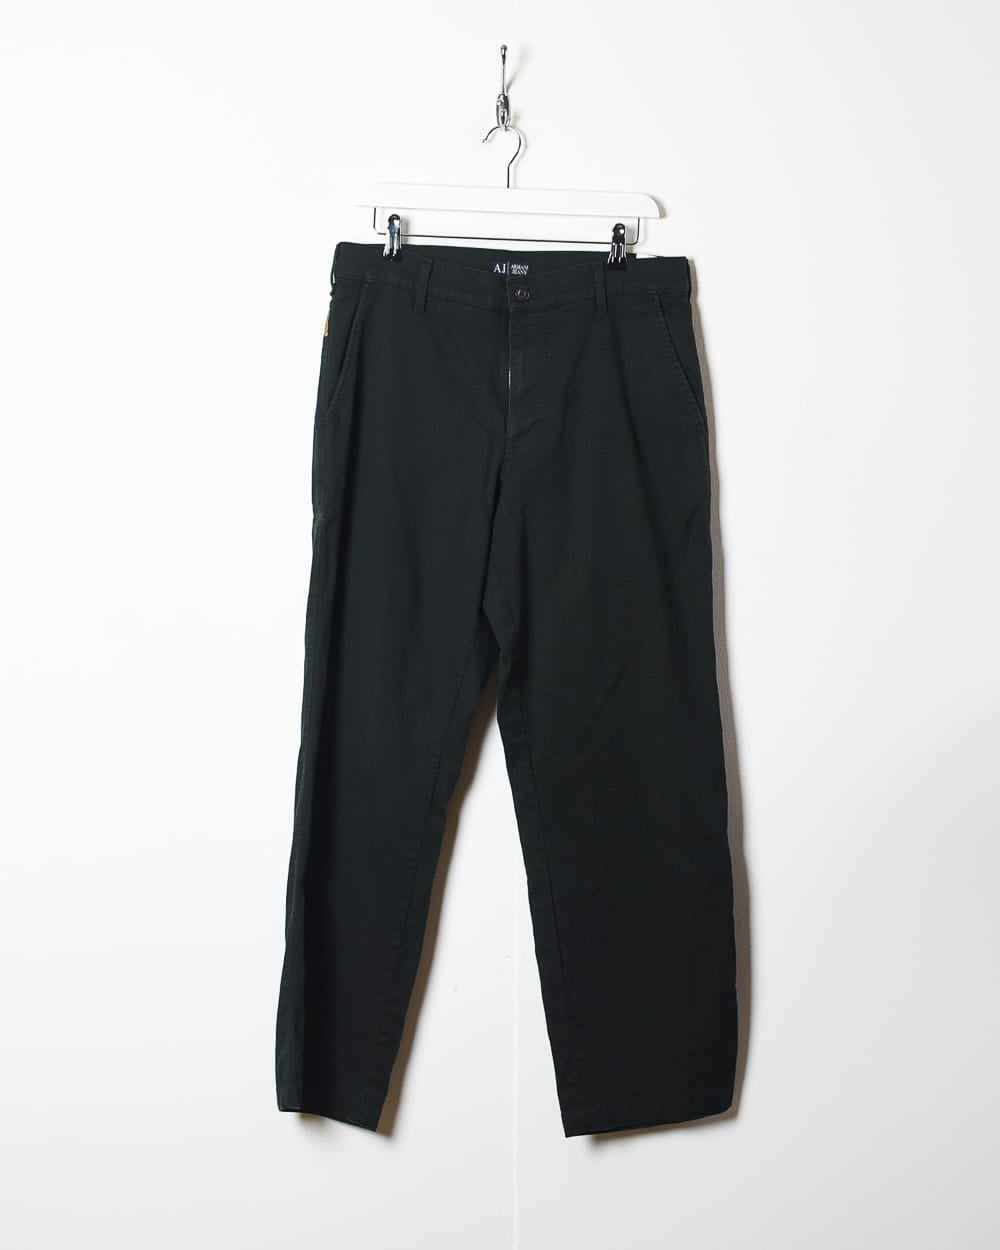 Black Armani Jeans - W32 L29